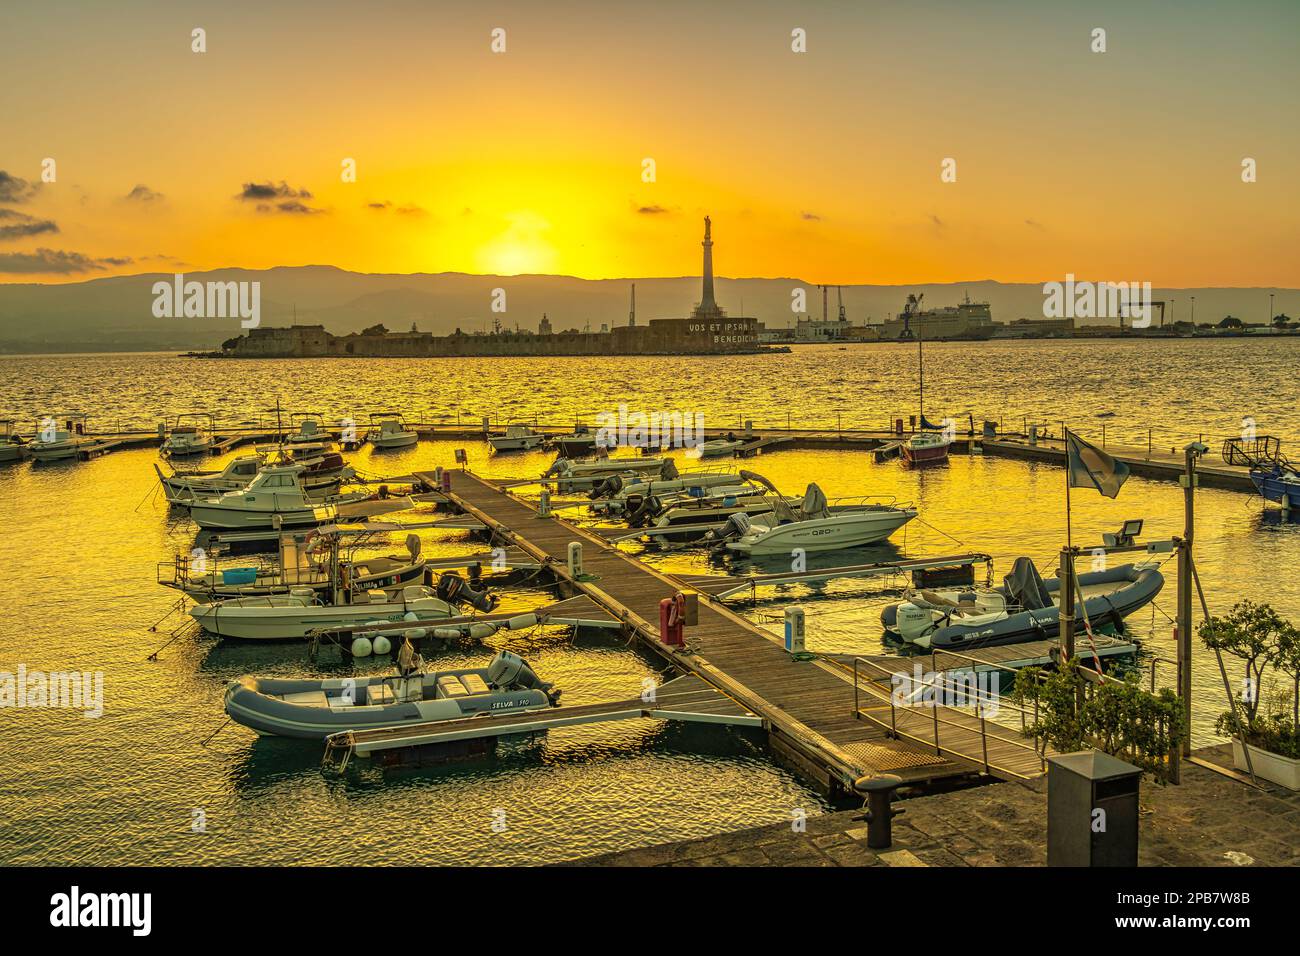 Coucher de soleil coloré sur le port de plaisance de Neptune à Messina. Bateaux amarrés aux quais flottants du port. Messine, Sicile, Italie, Europe Banque D'Images